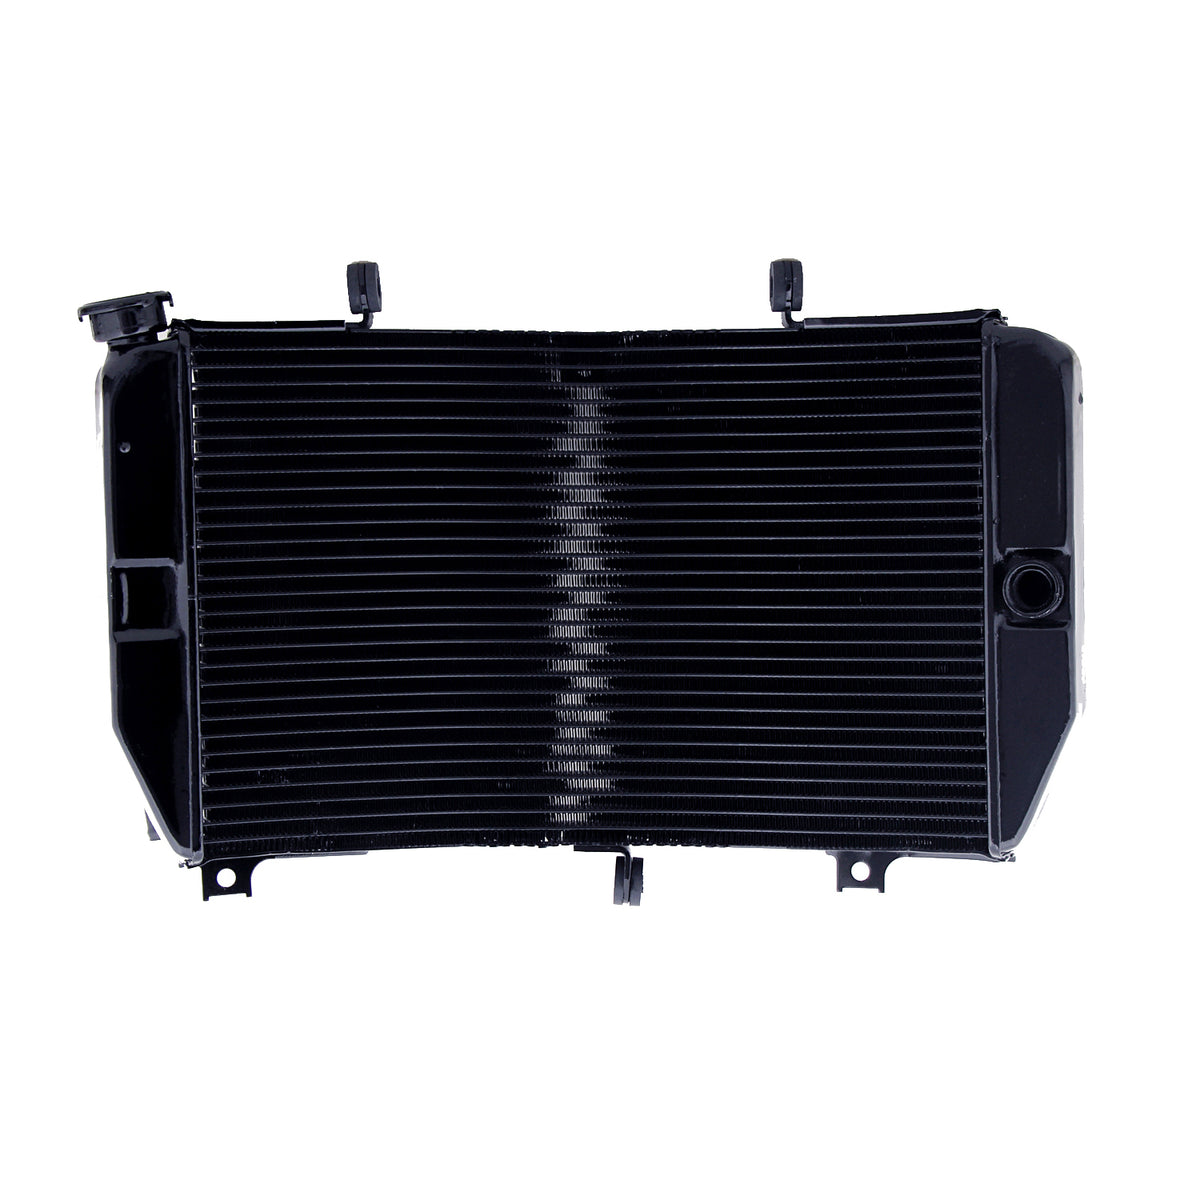 Radiator Grille Guard Cooler For Suzuki GSXR 600 01-03 GSXR 750 1000 01-02 Black